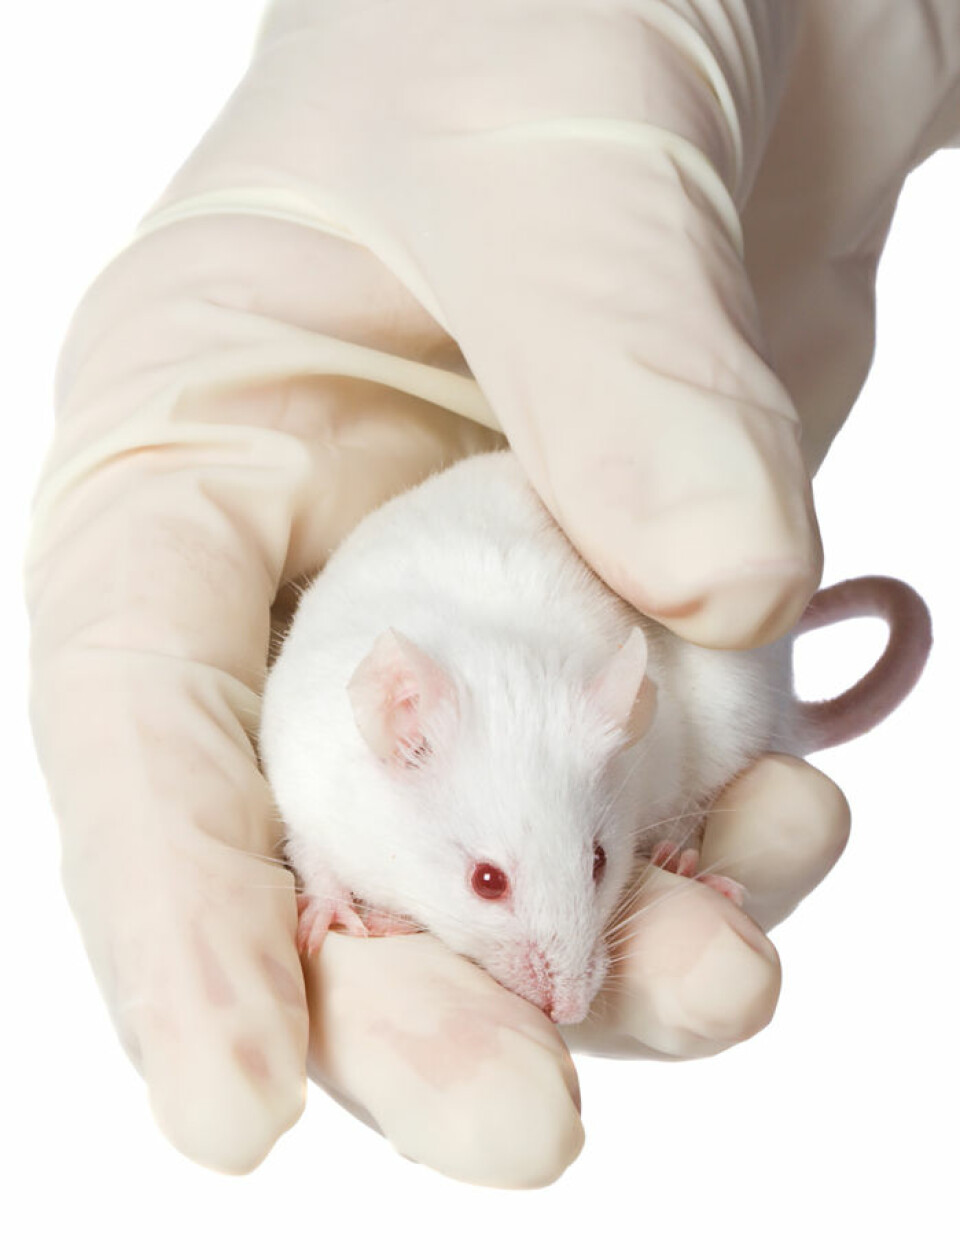 Det er langt fra mus til menn i forskningen, men de små krypene er ofte de første som tester ut nye legemidler. (Illustrasjonsfoto: colourbox.no)